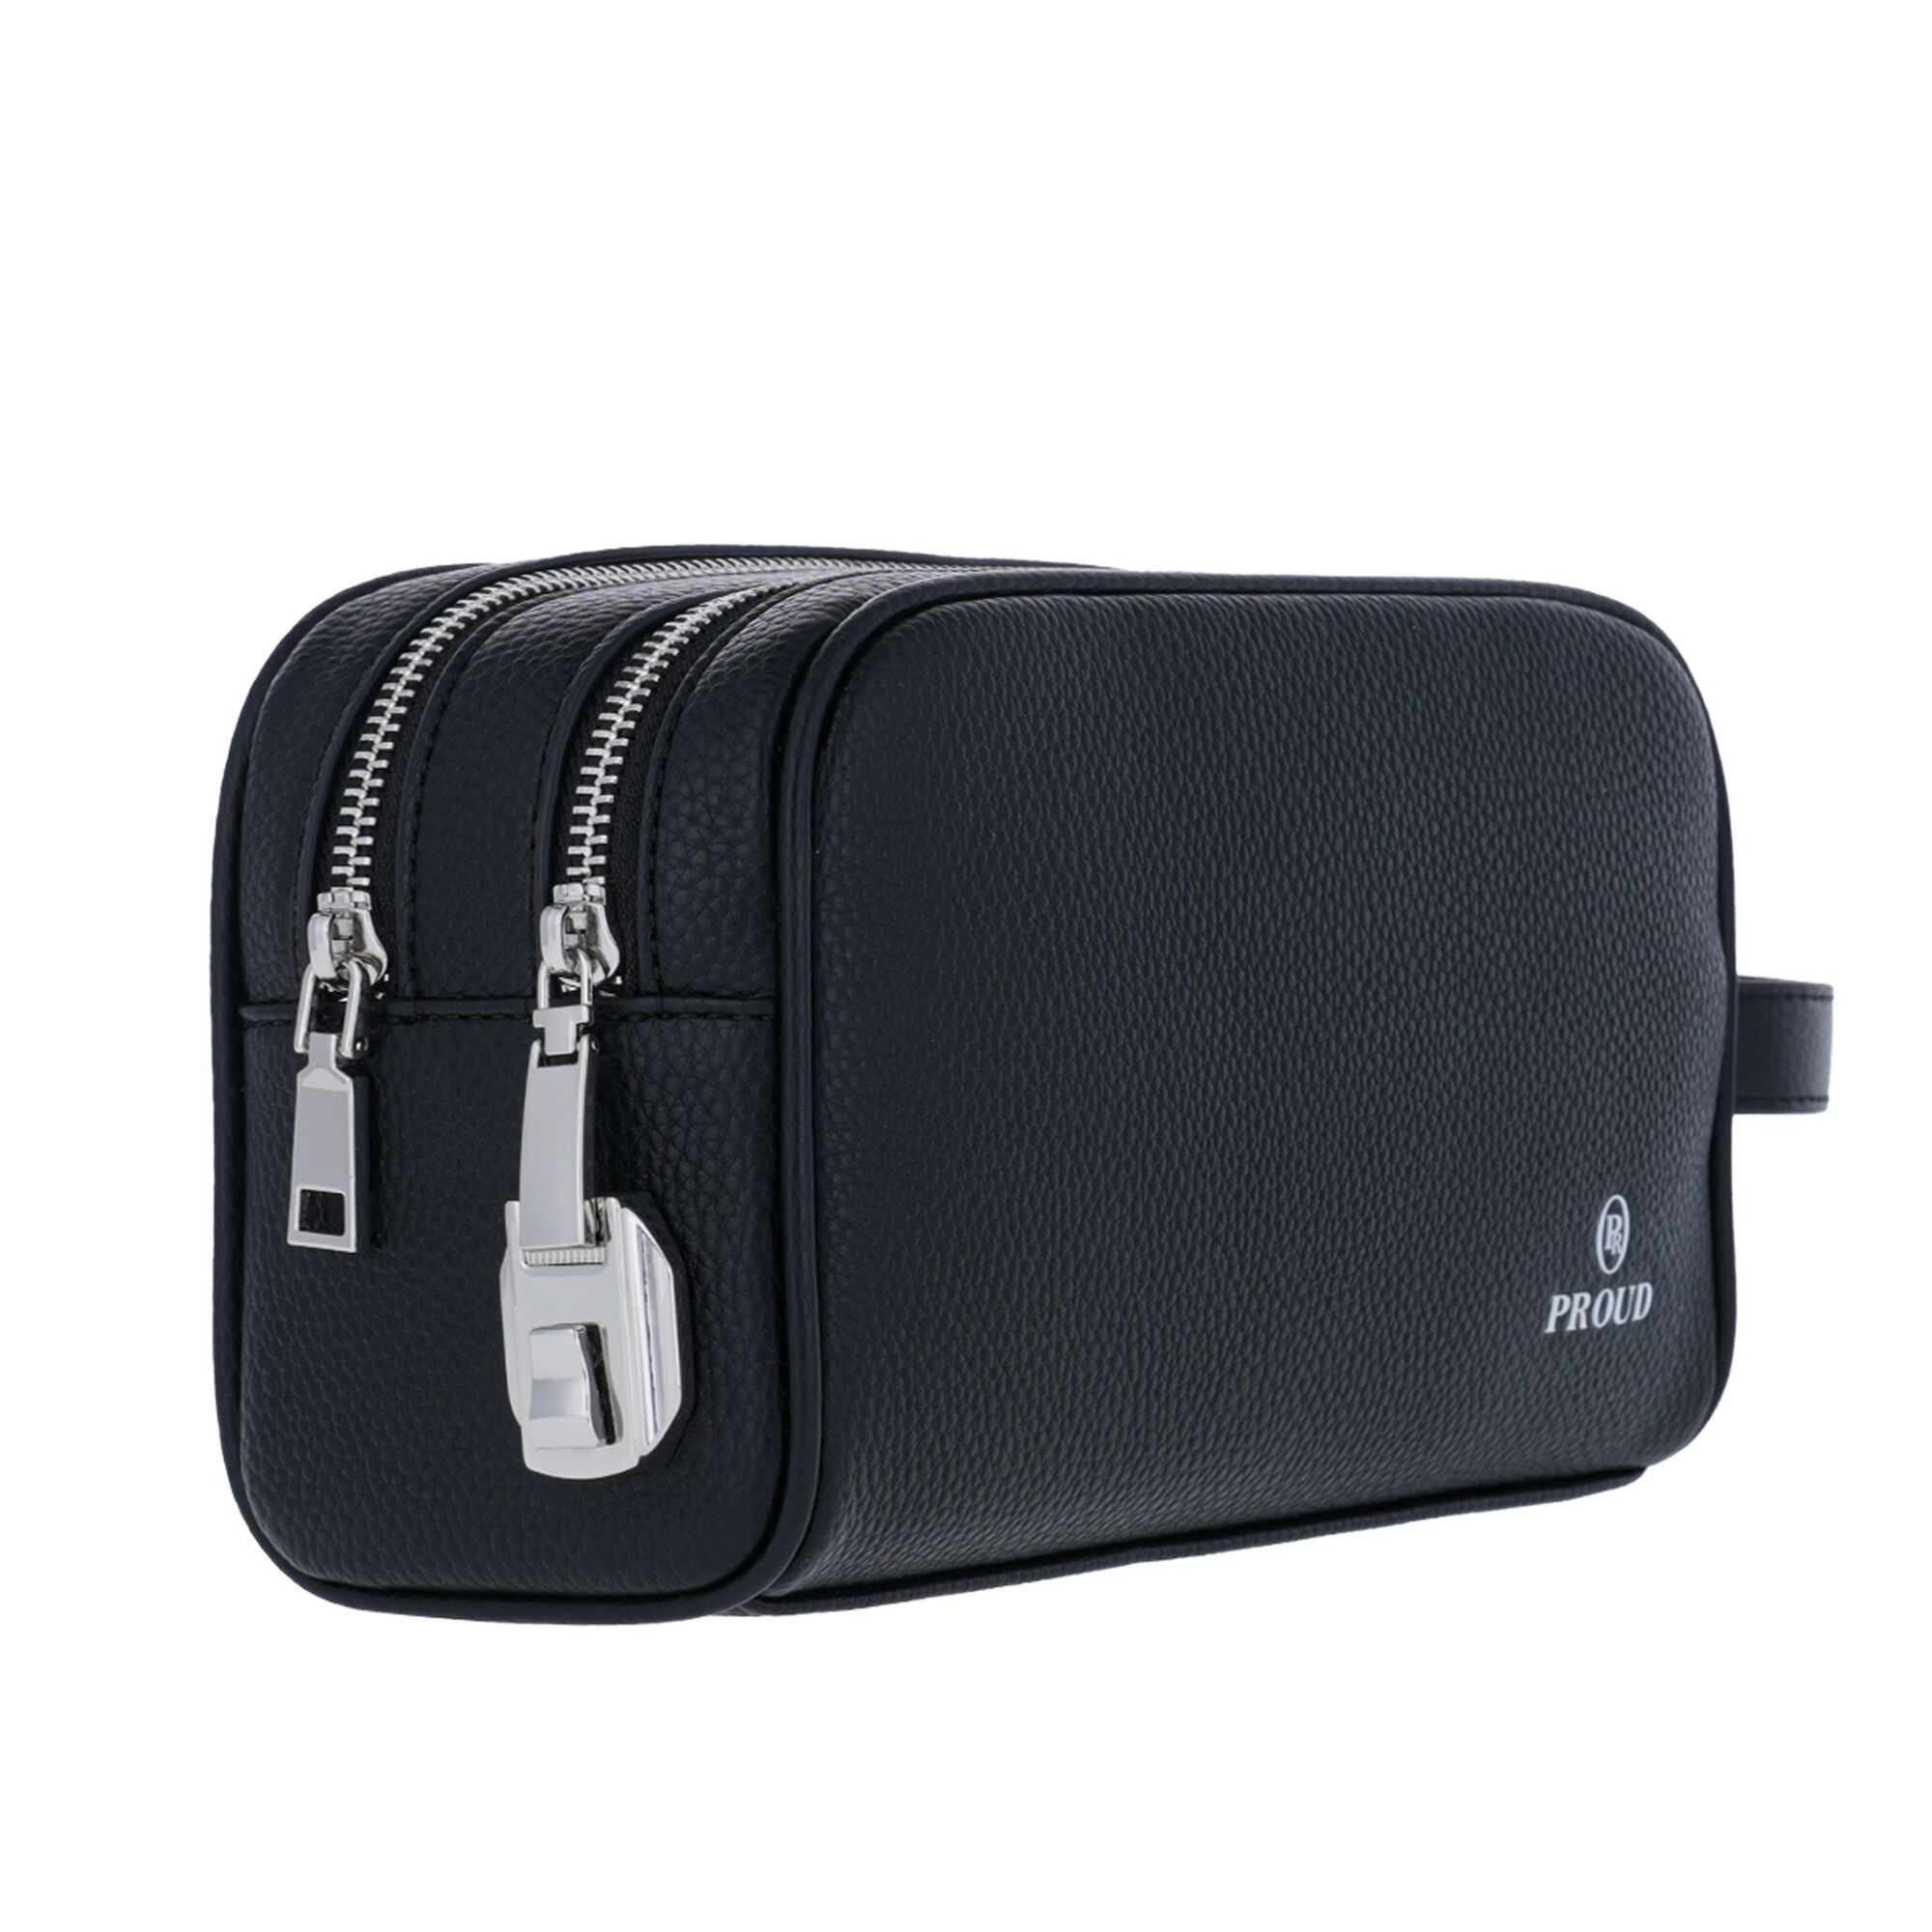 Proud Black Men's Handbag L2305095-B